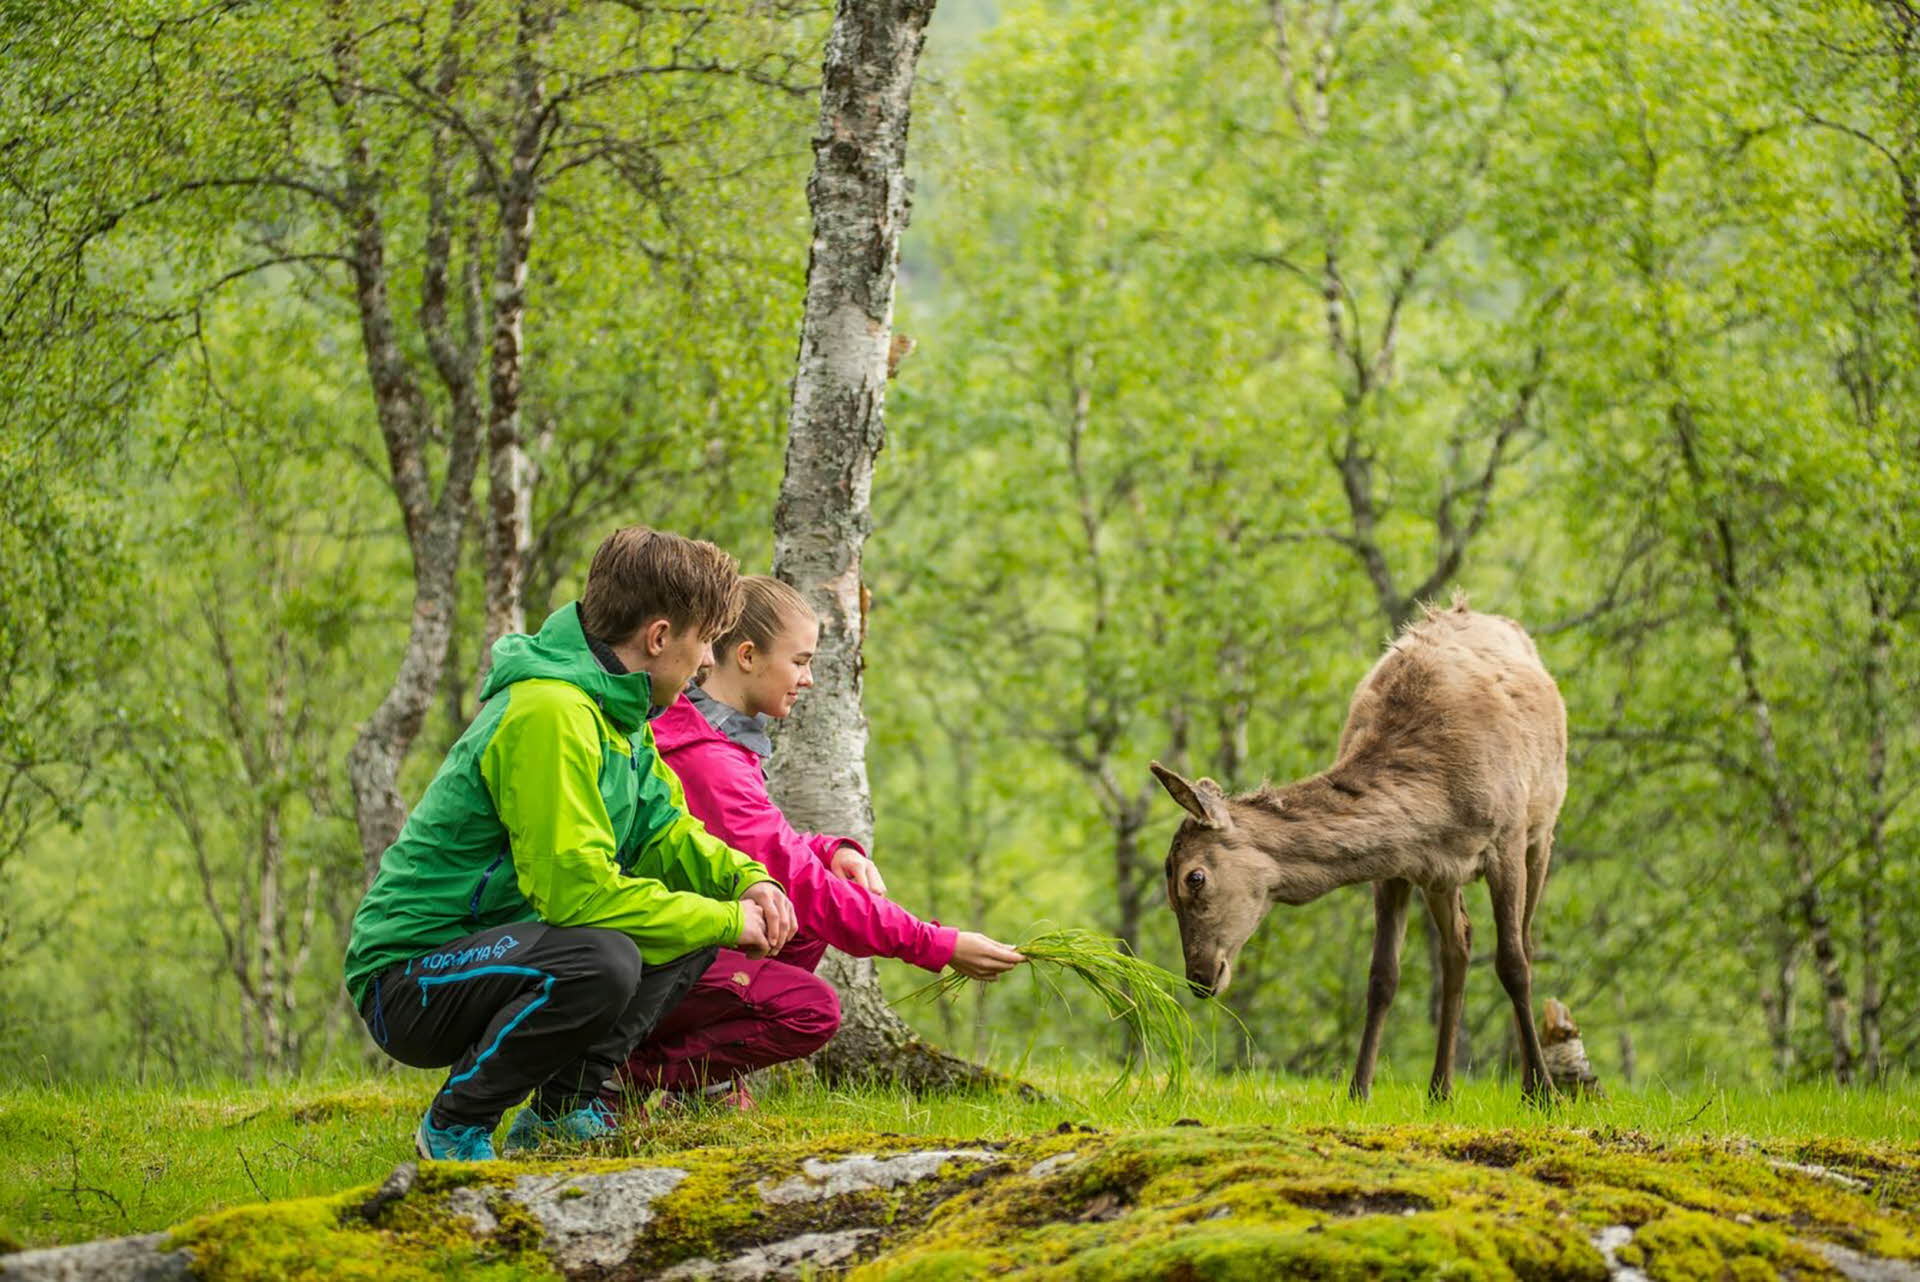 Un garçon et une fille en veste verte et rose sont assis près d’un cerf dans une forêt verdoyante.